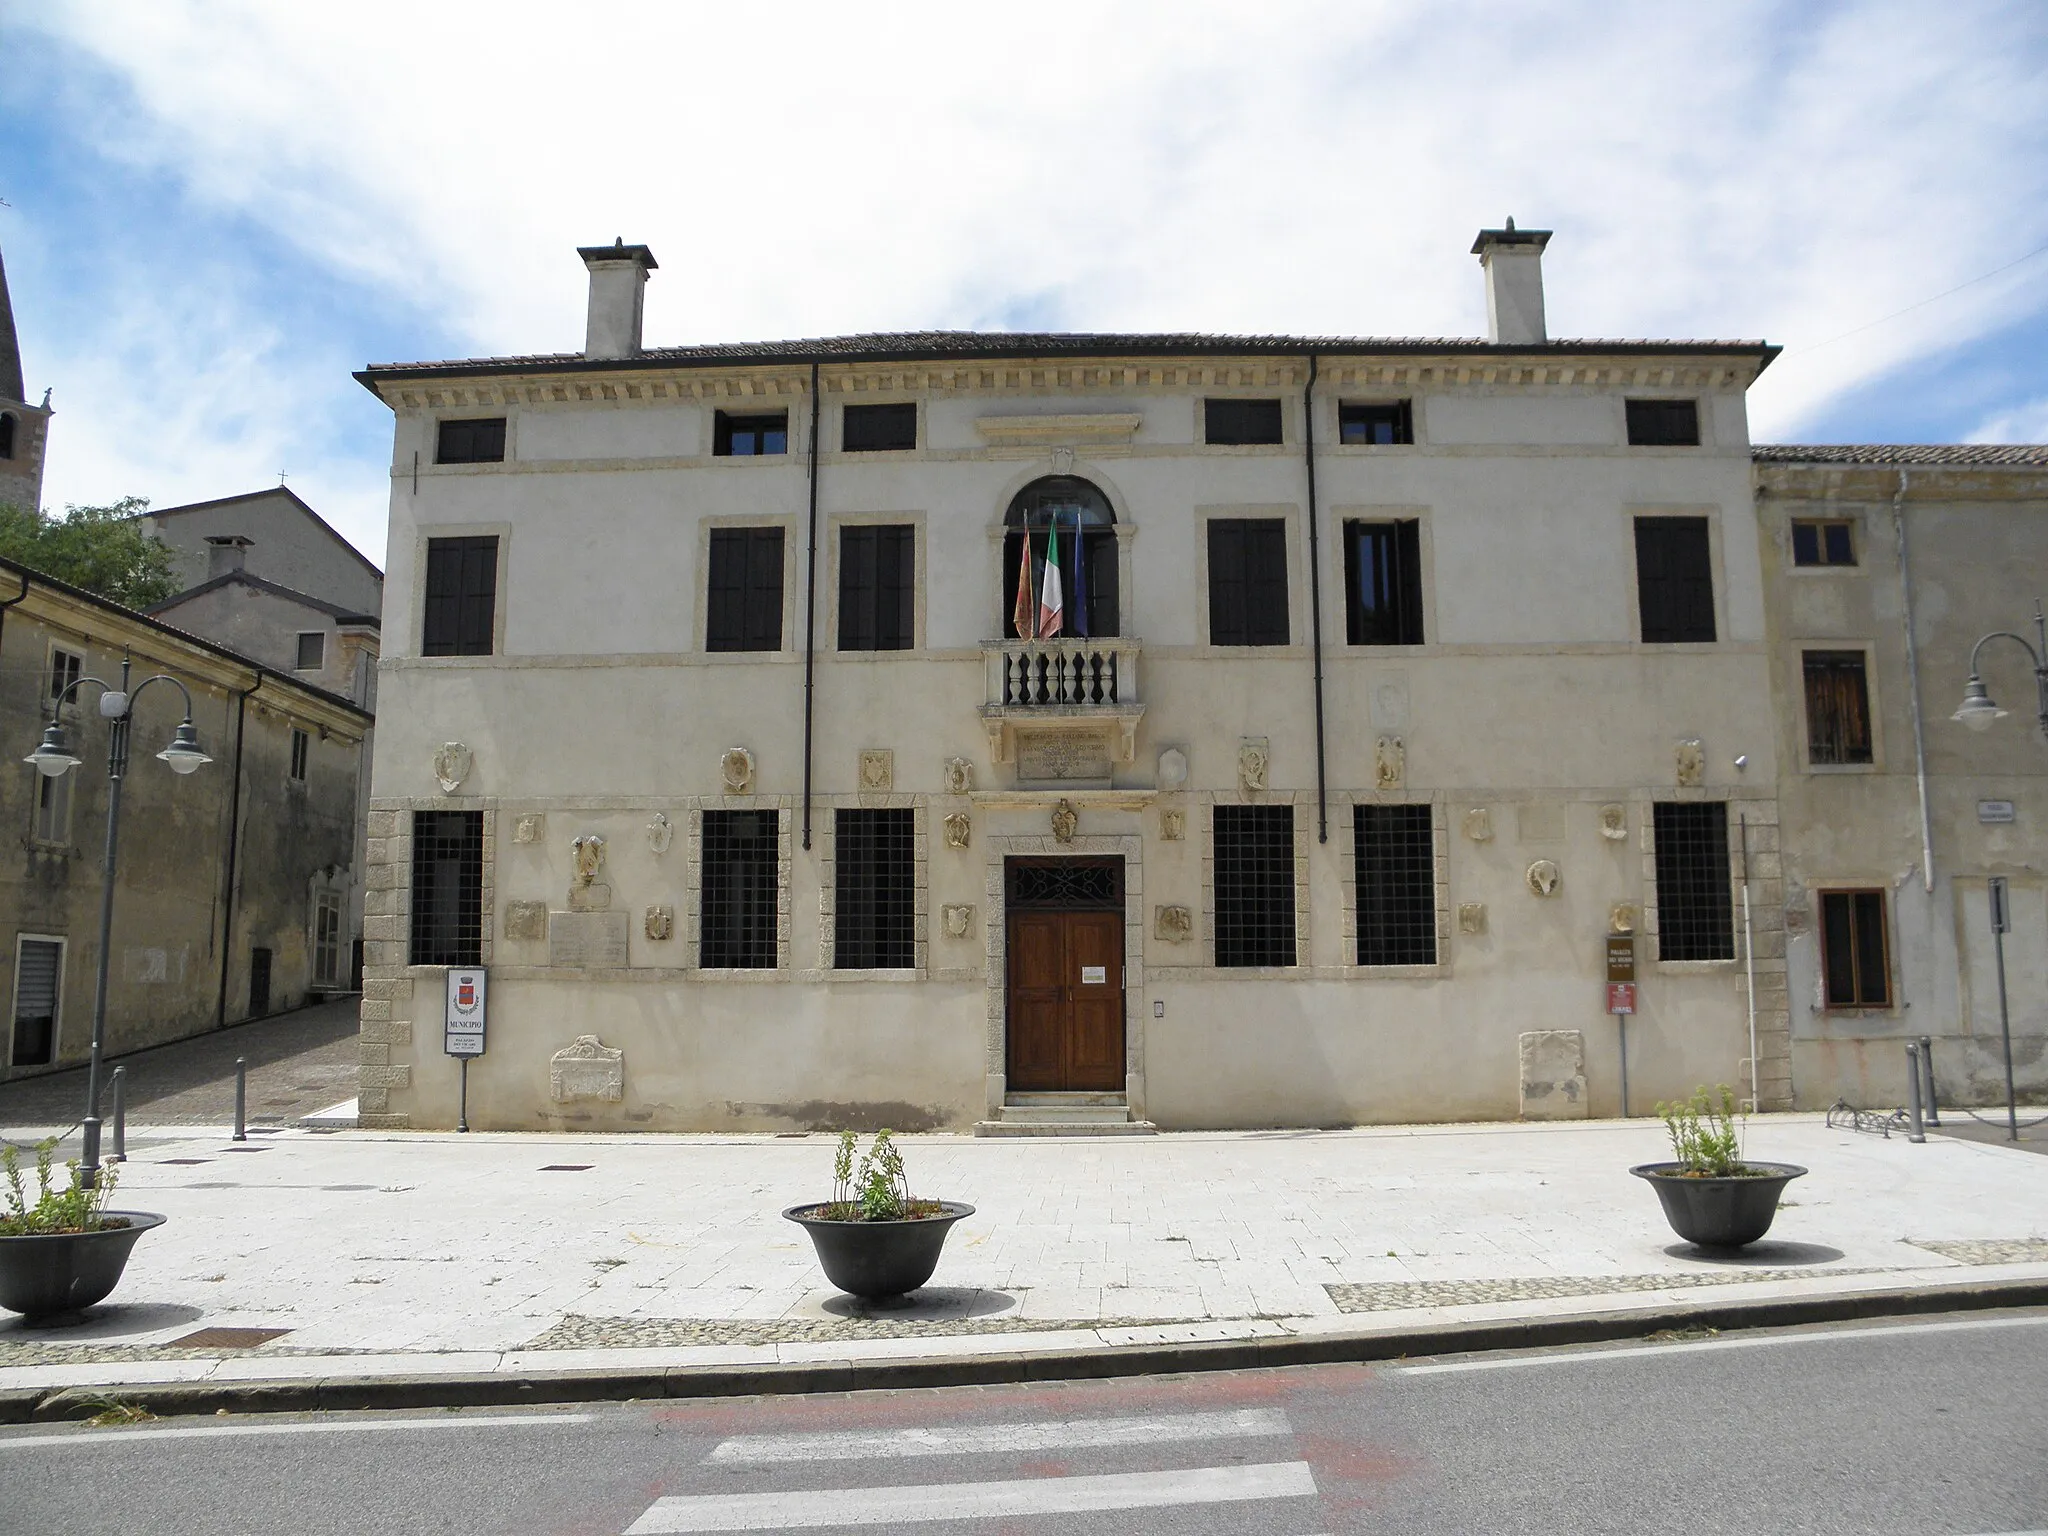 Photo showing: Orgiano, Villa Fracanzan, detta anche Palazzo dei Vicari, sede municipale del comune vicentino.